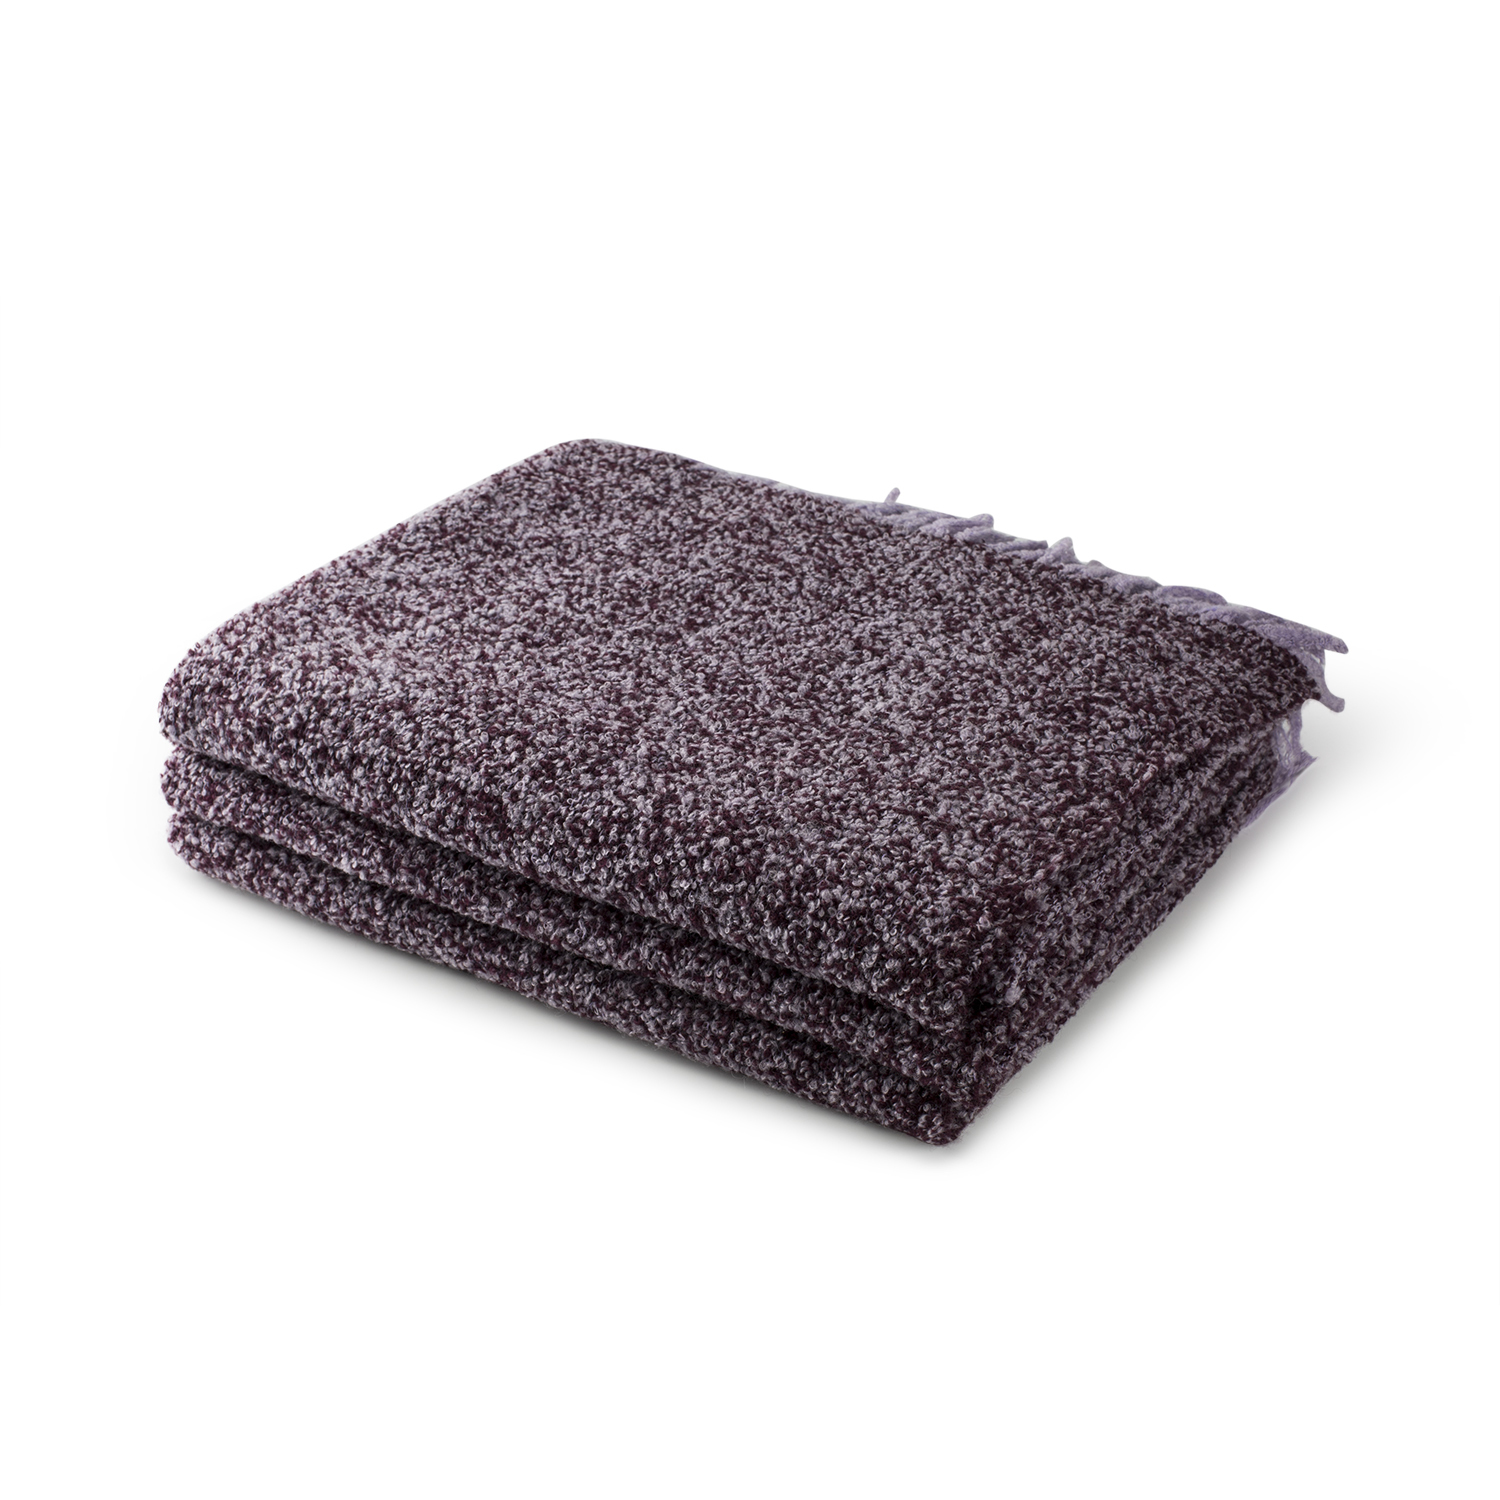 意大利原产SP Giardino Segreto混色美利奴羊毛毯沙发毯盖毯 深紫色